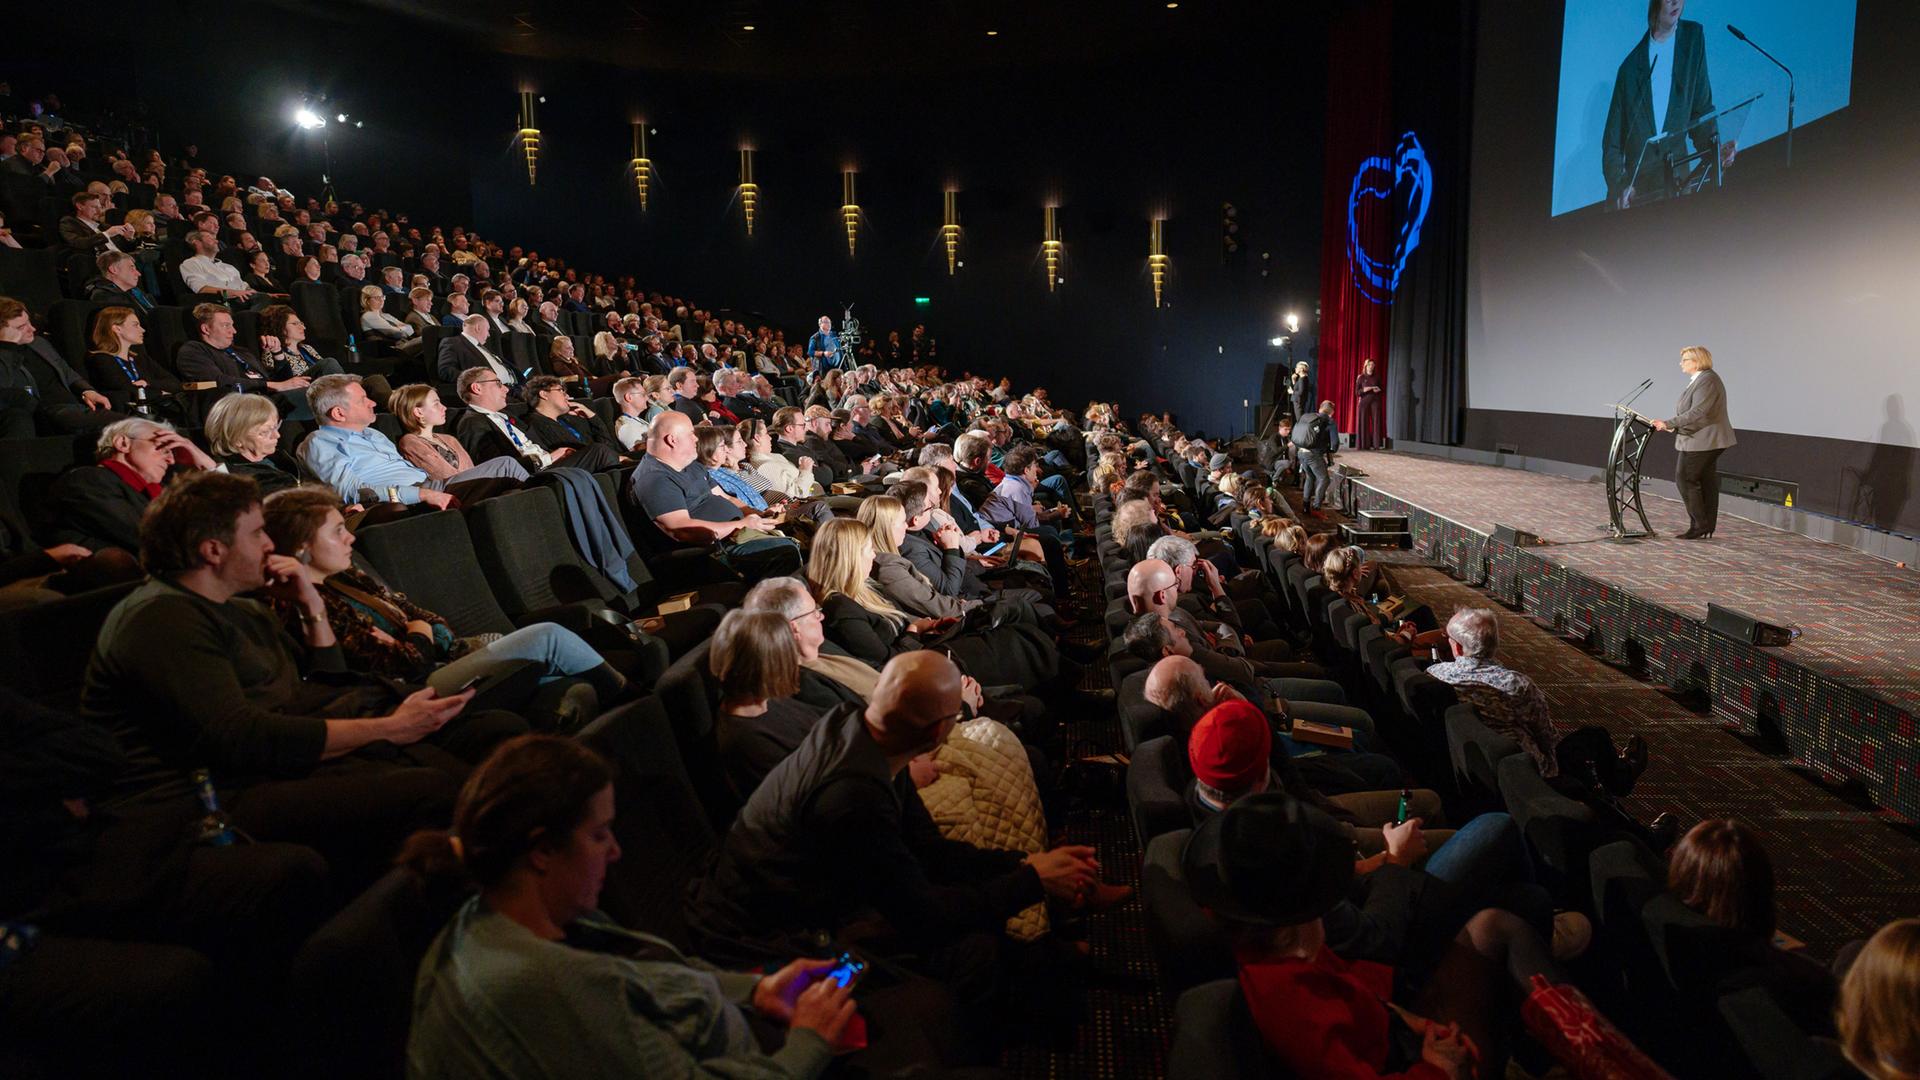 Blick in einen vollbesetzten Kinosaal. Auf der Bühne hält ein Mann eine Rede.